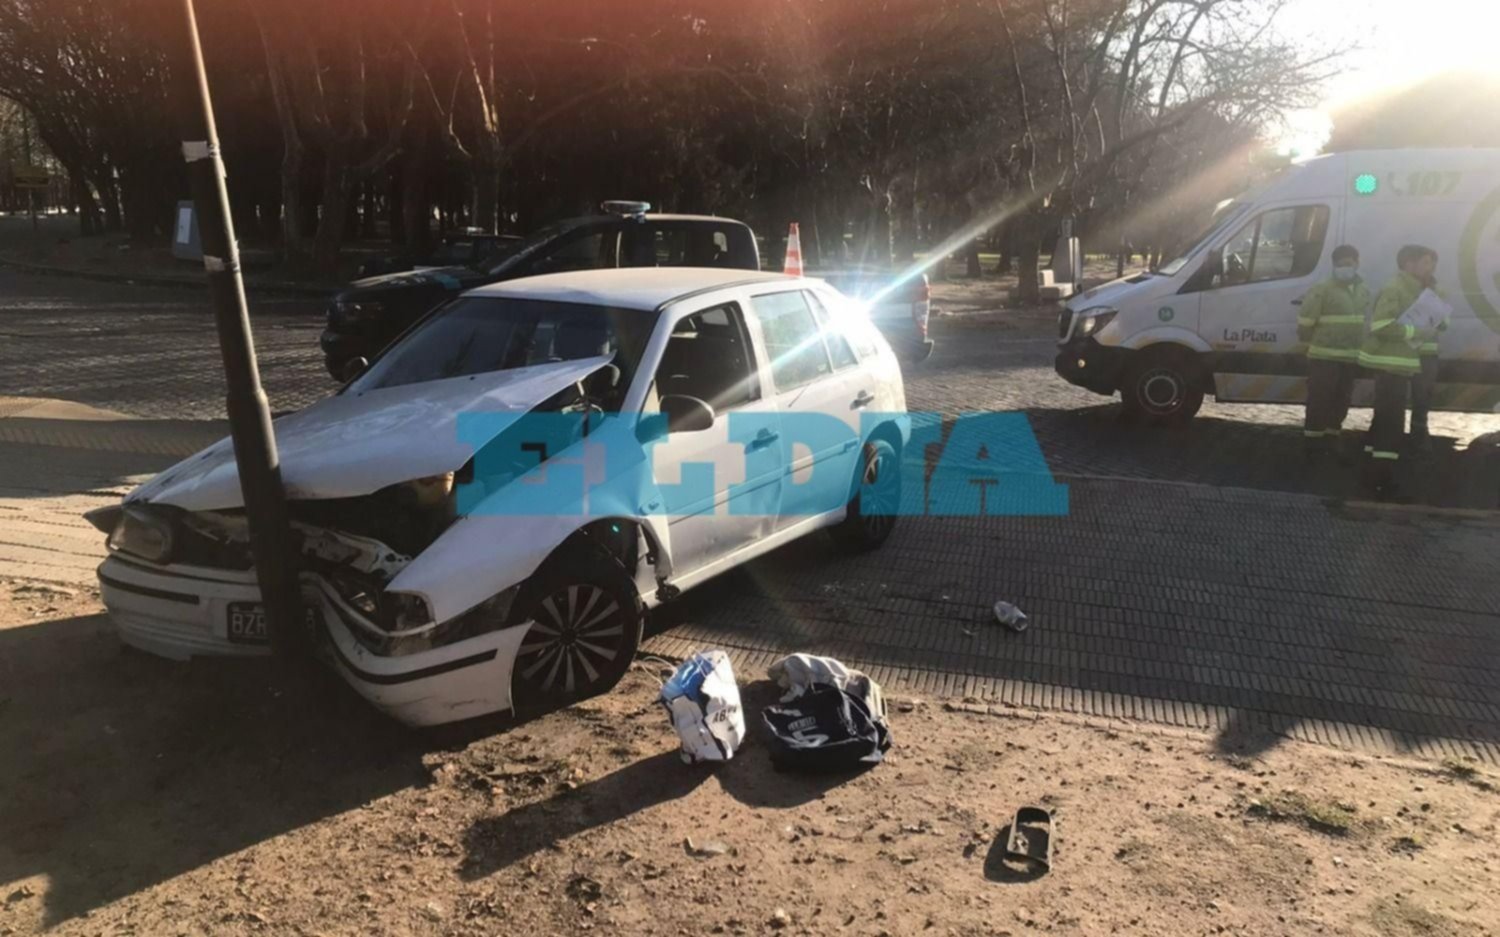 Domingo accidentado: un auto impactó contra una poste de luz en pleno centro de la Ciudad